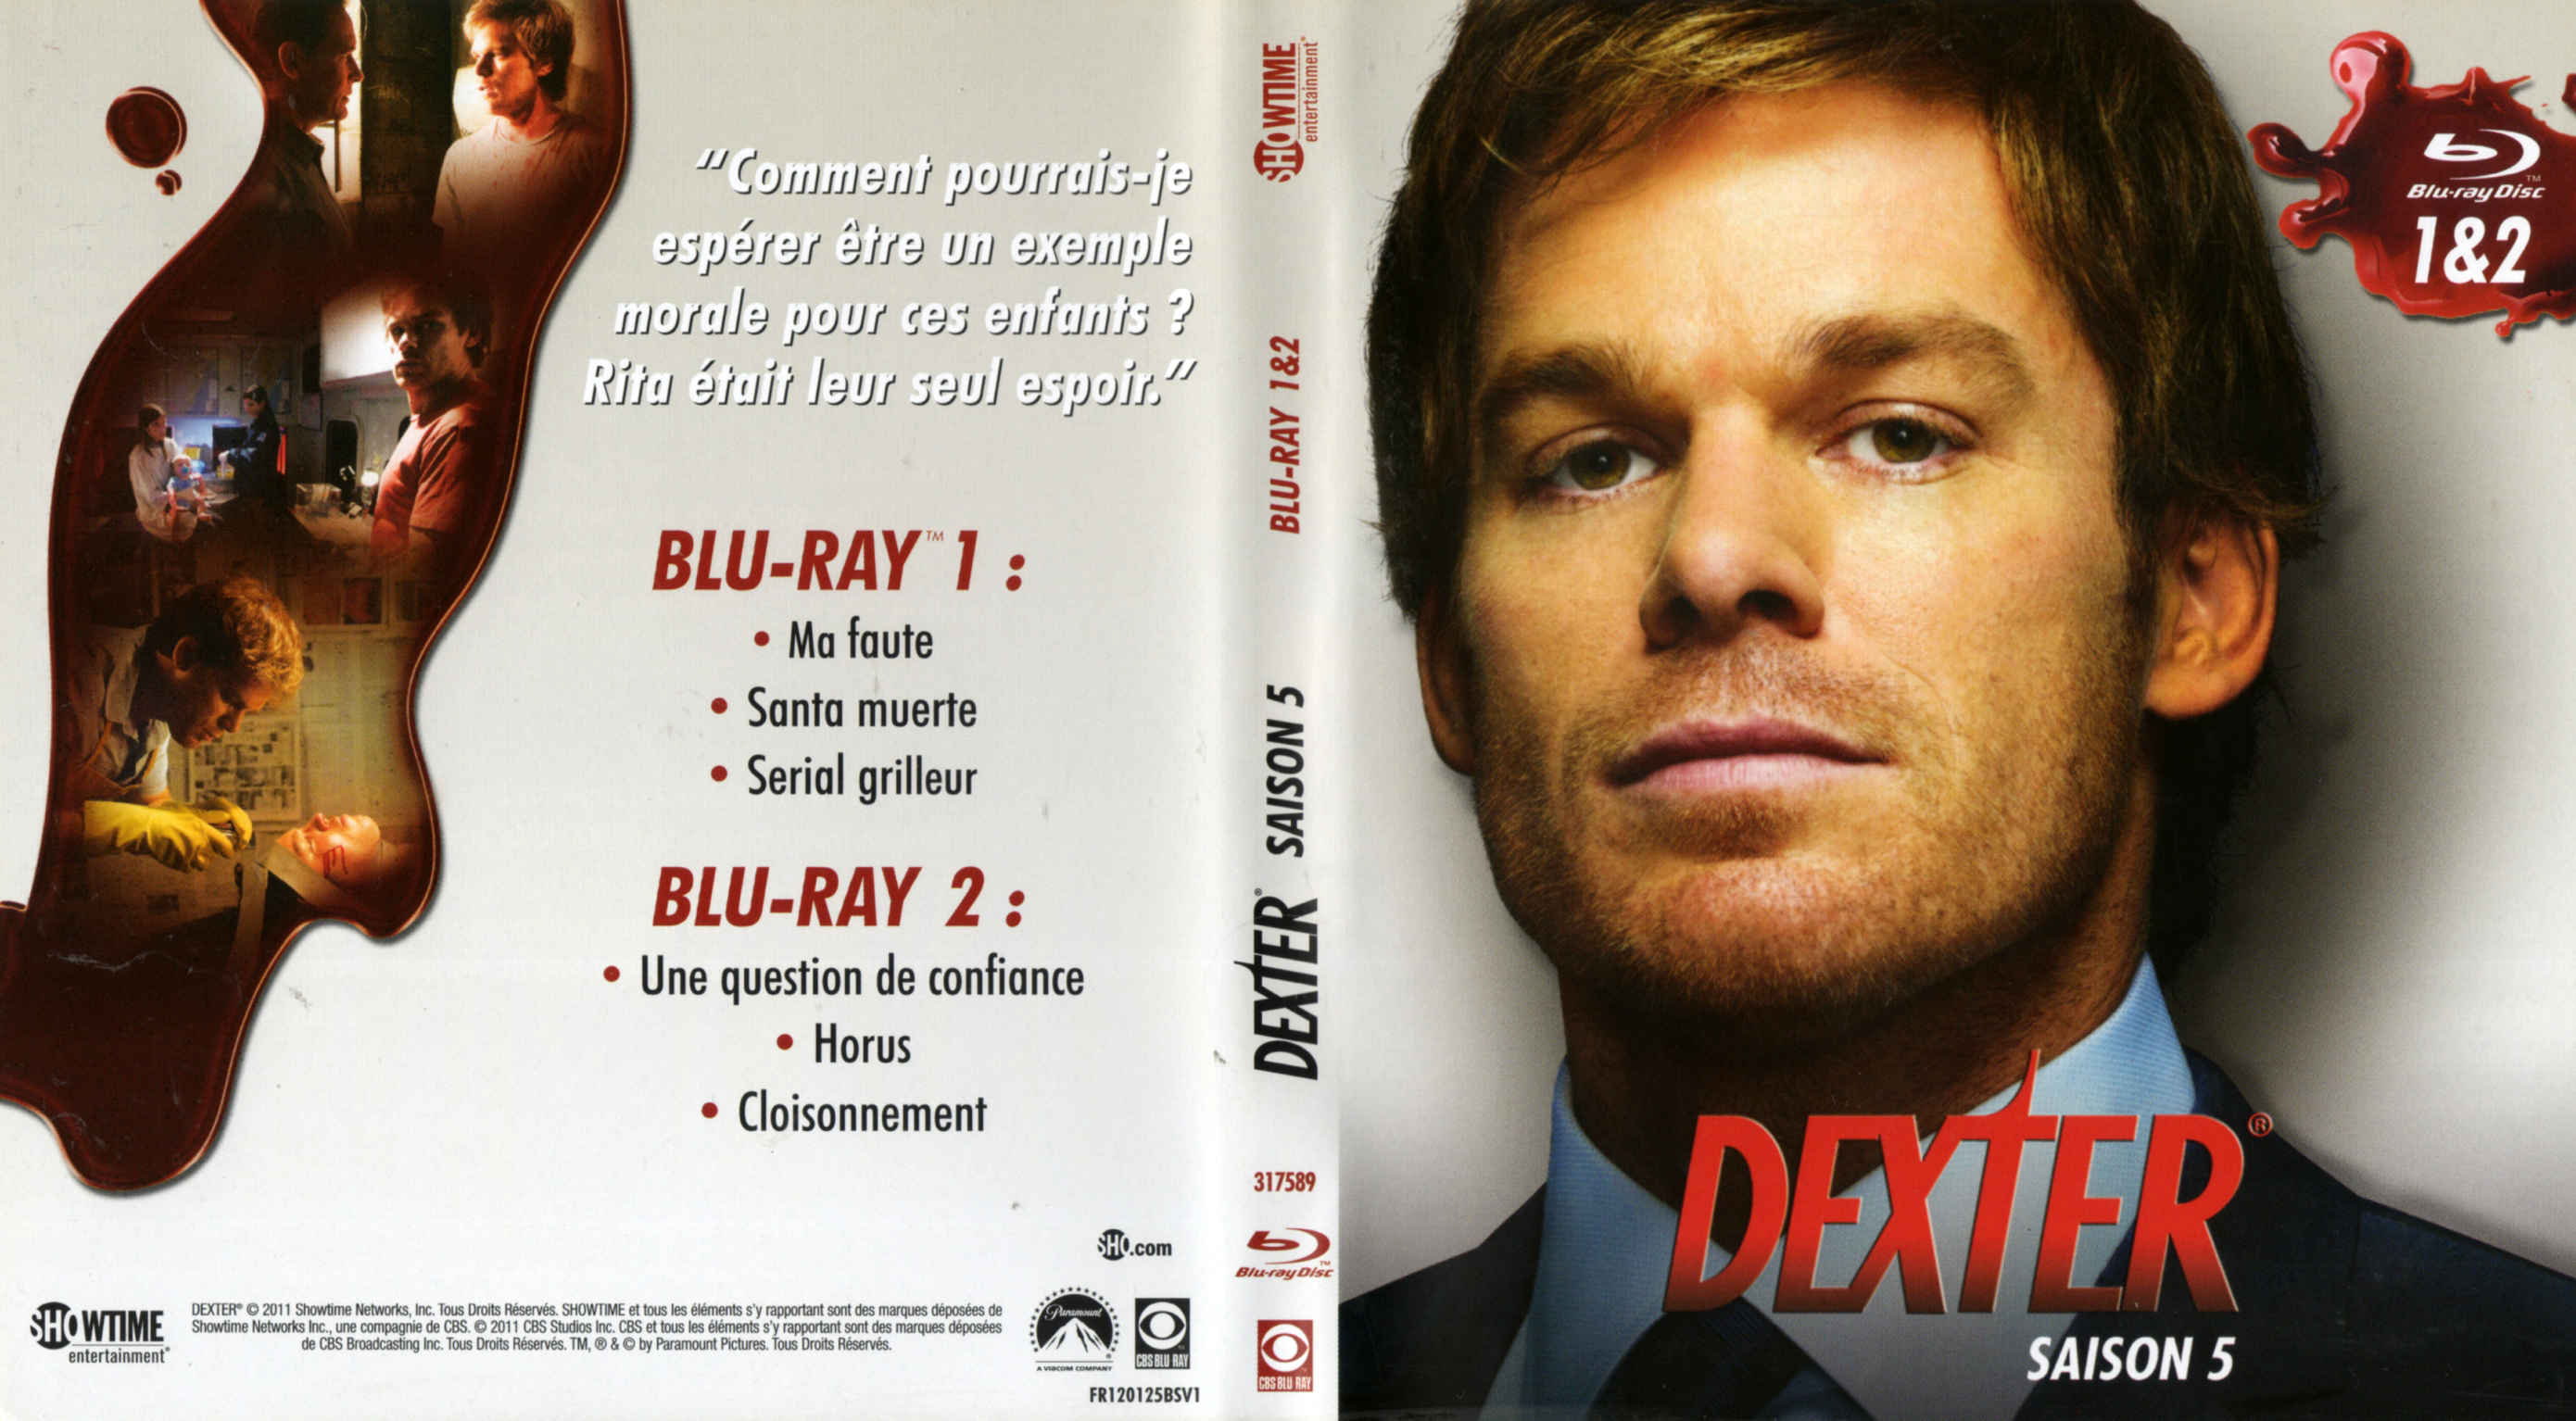 Jaquette DVD Dexter saison 5 DVD 1 (BLU-RAY)